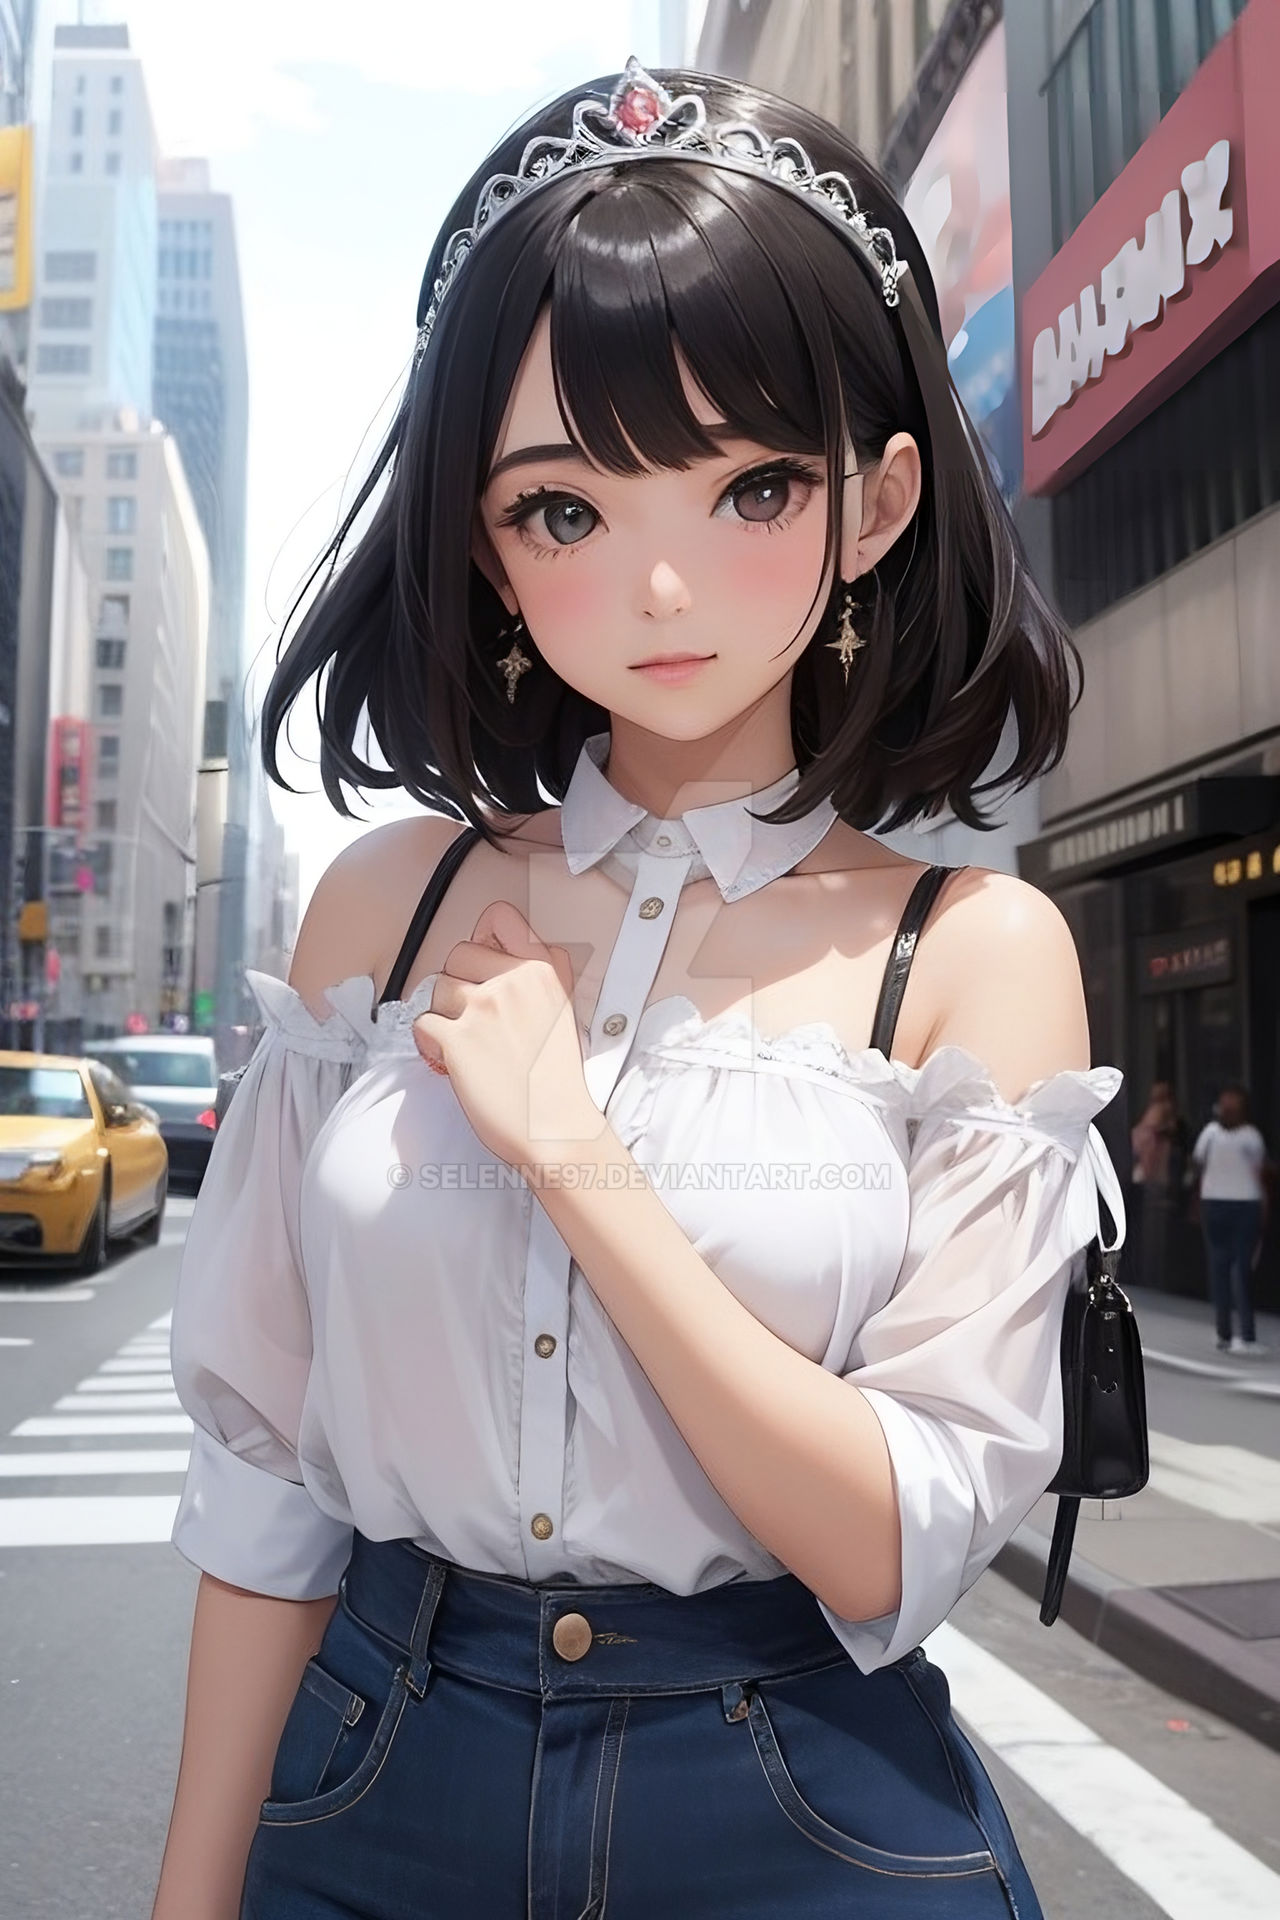 anime girl by selenne97 on DeviantArt